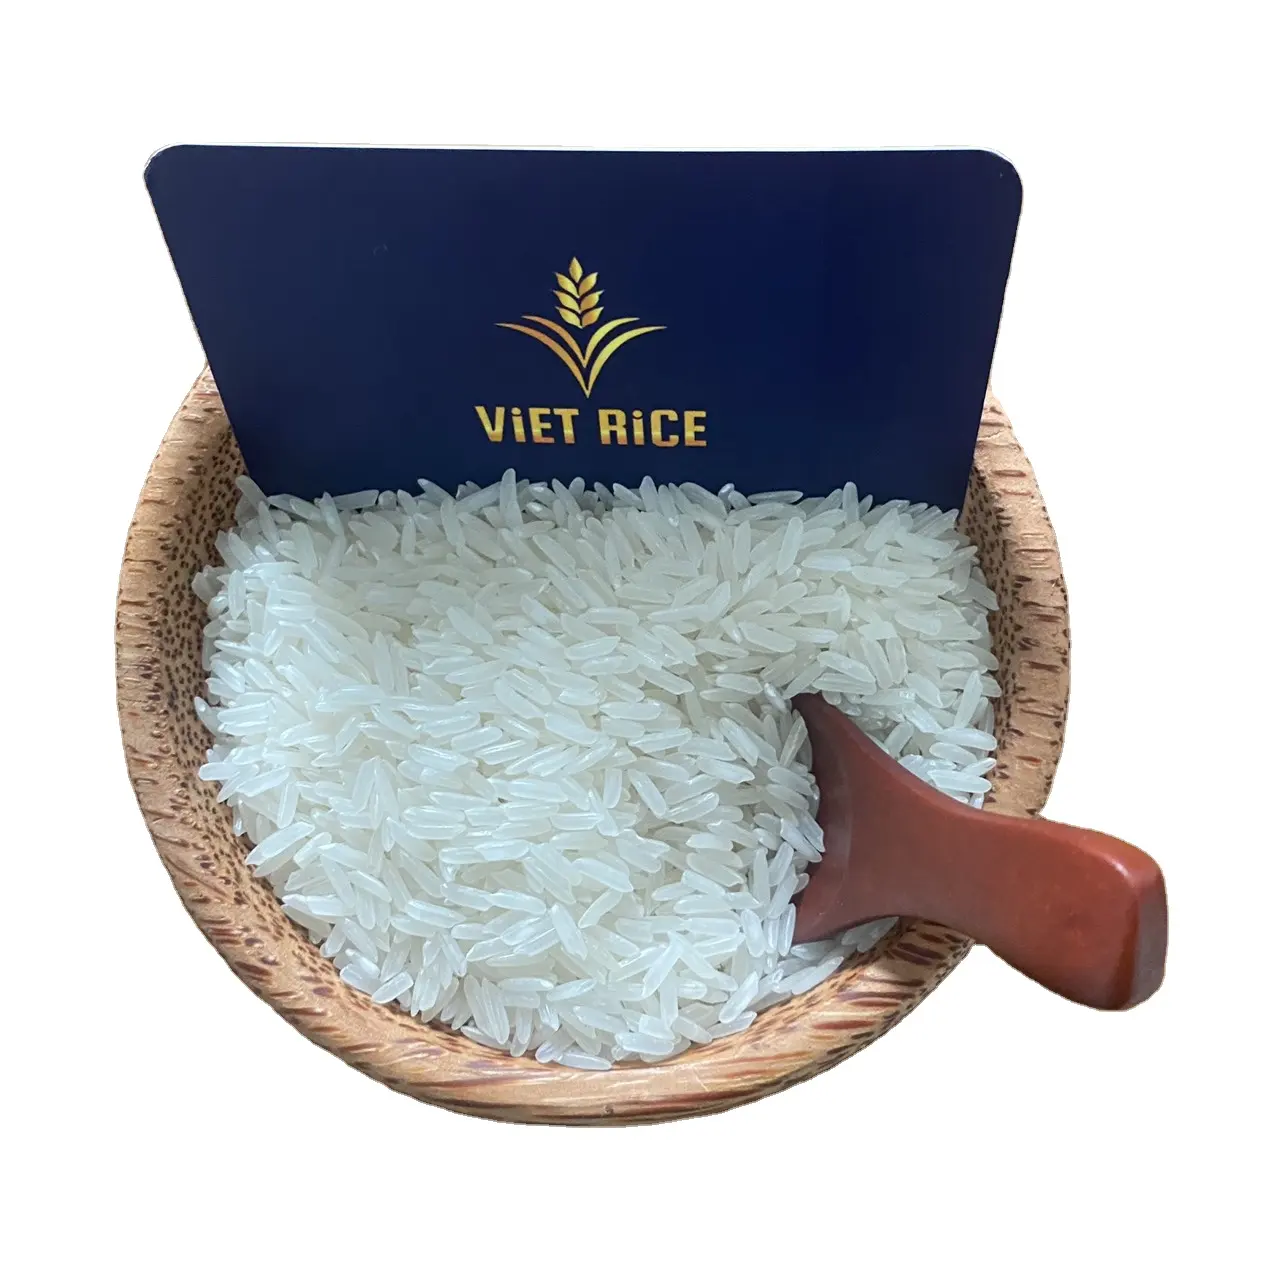 अधिकांश अंतरराष्ट्रीय स्तर पर निर्यात किए जाने वाले चावल-kdm लंबे अनाज सफेद चावल-वैश्विक निर्यात मानकों, उच्च गुणवत्ता, प्रतिस्पर्धी मूल्य को पूरा करता है